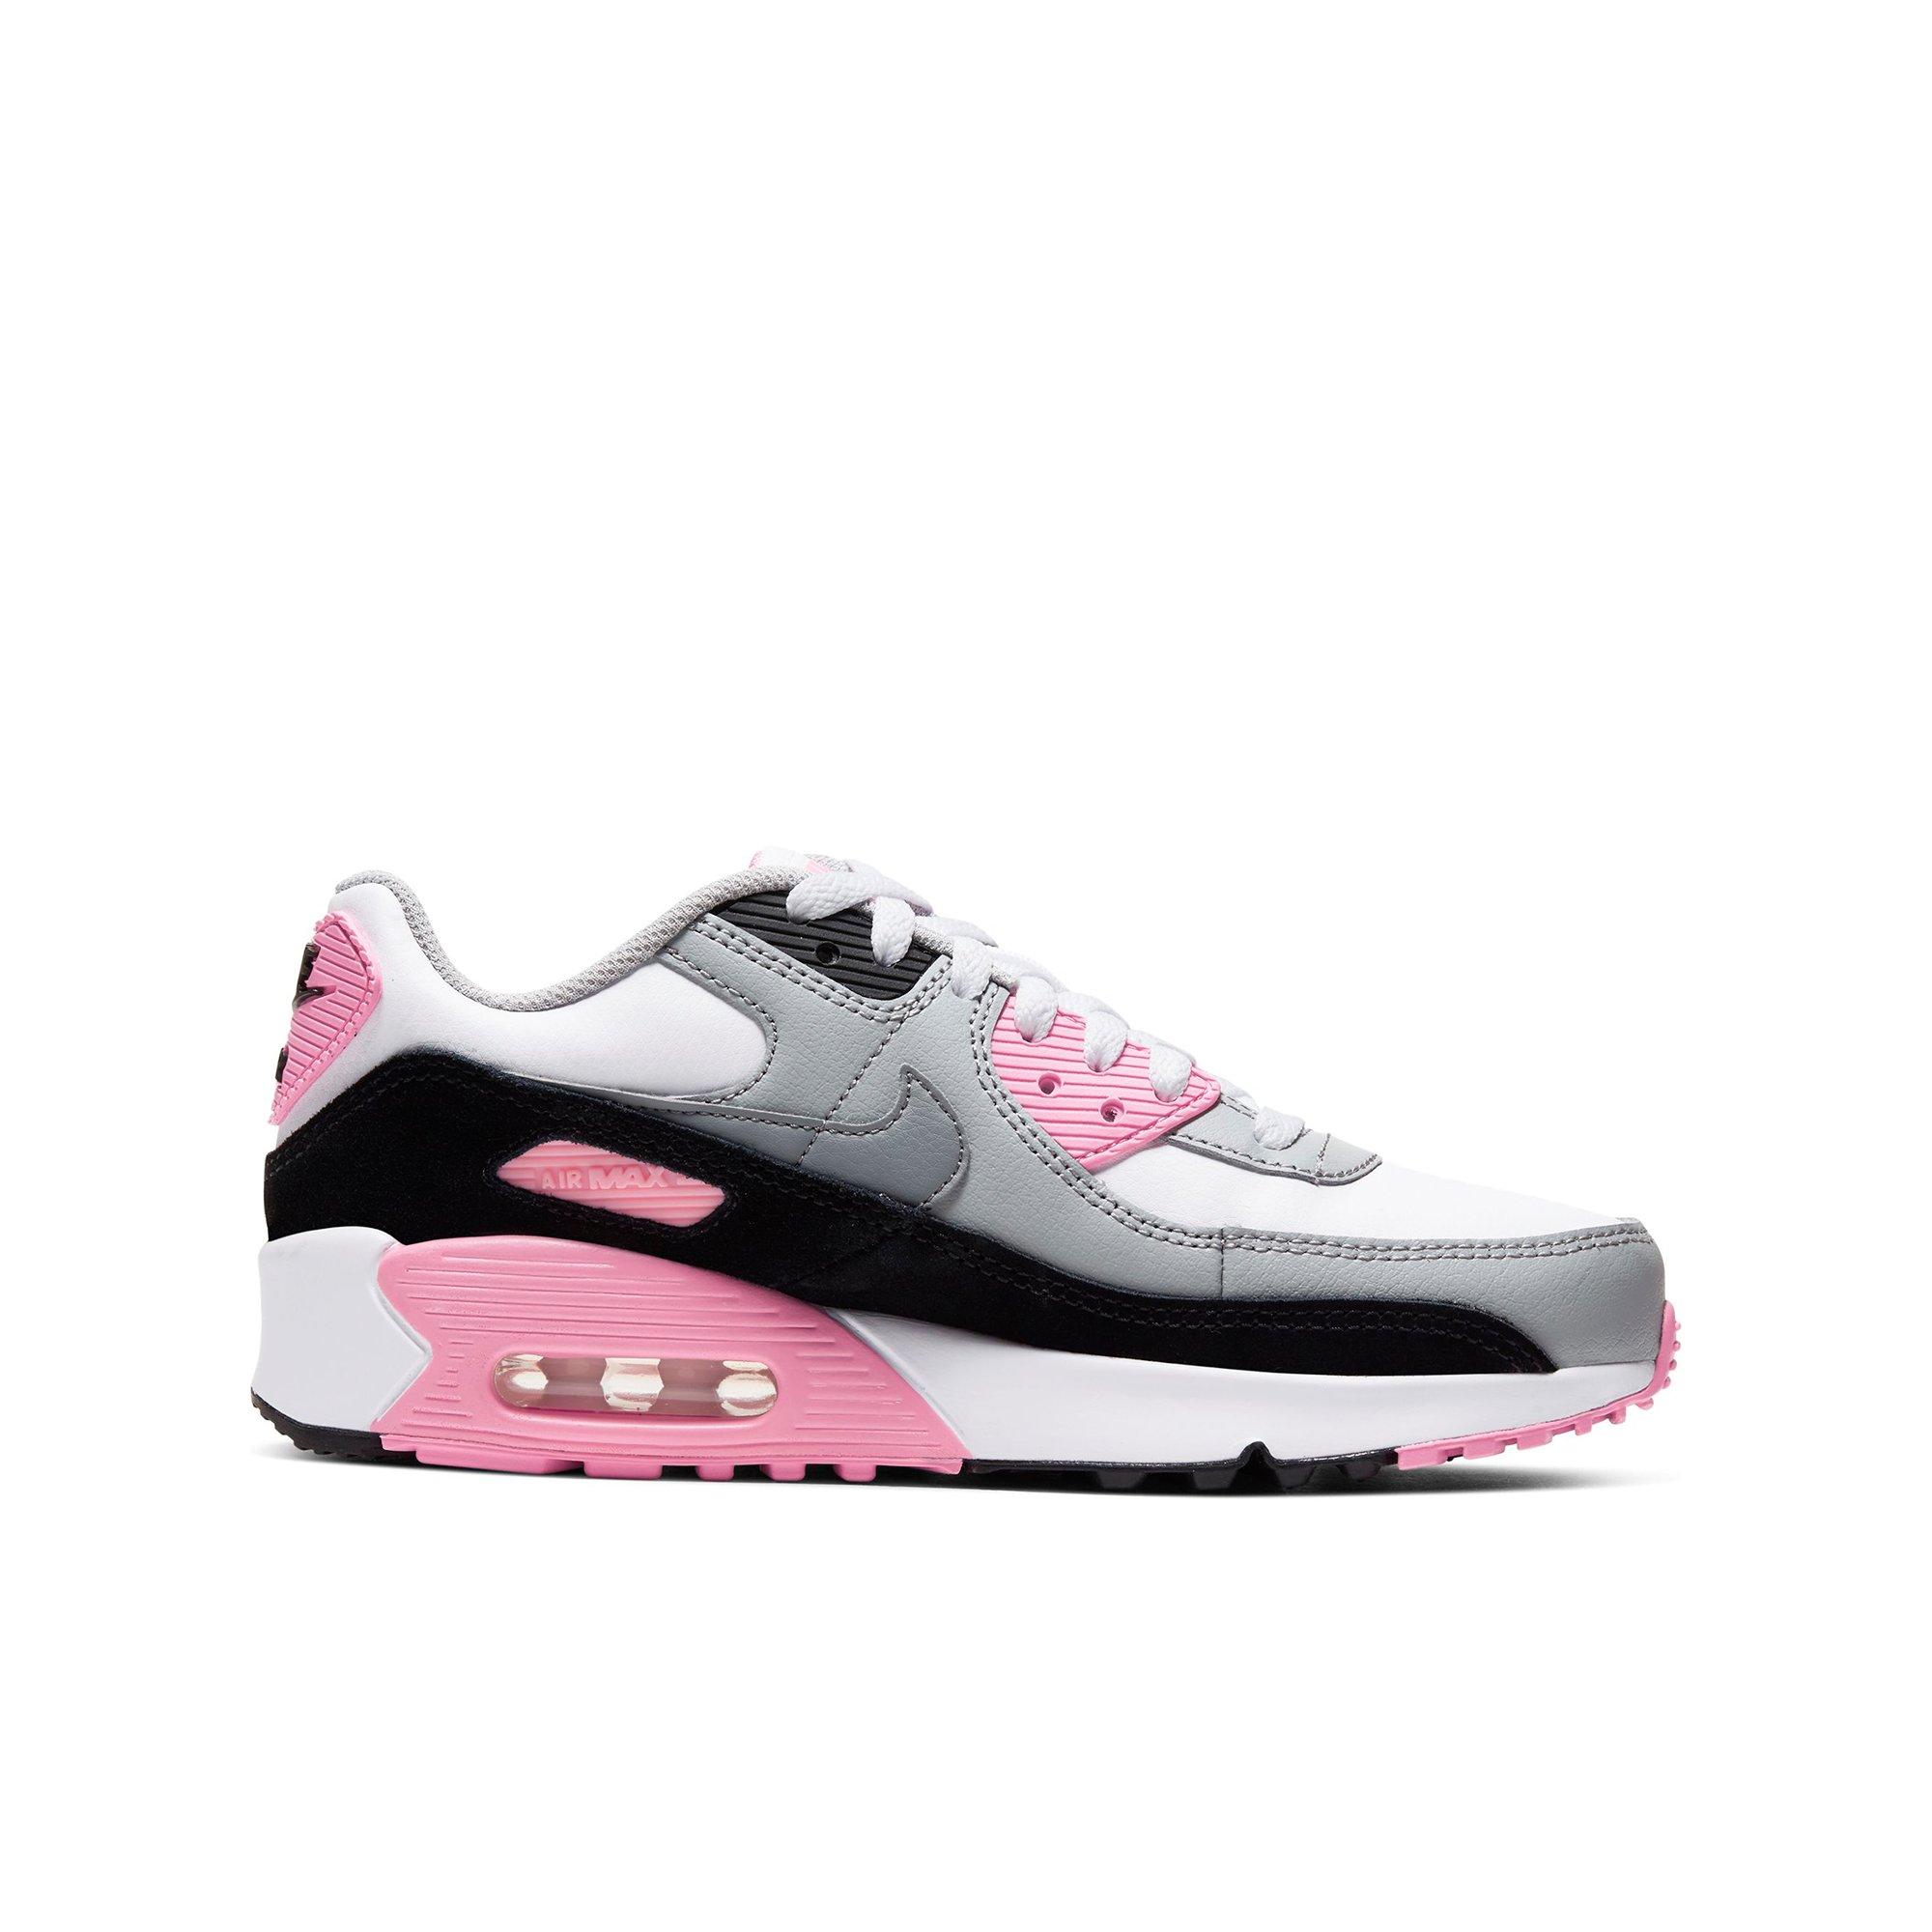 gray and pink air max